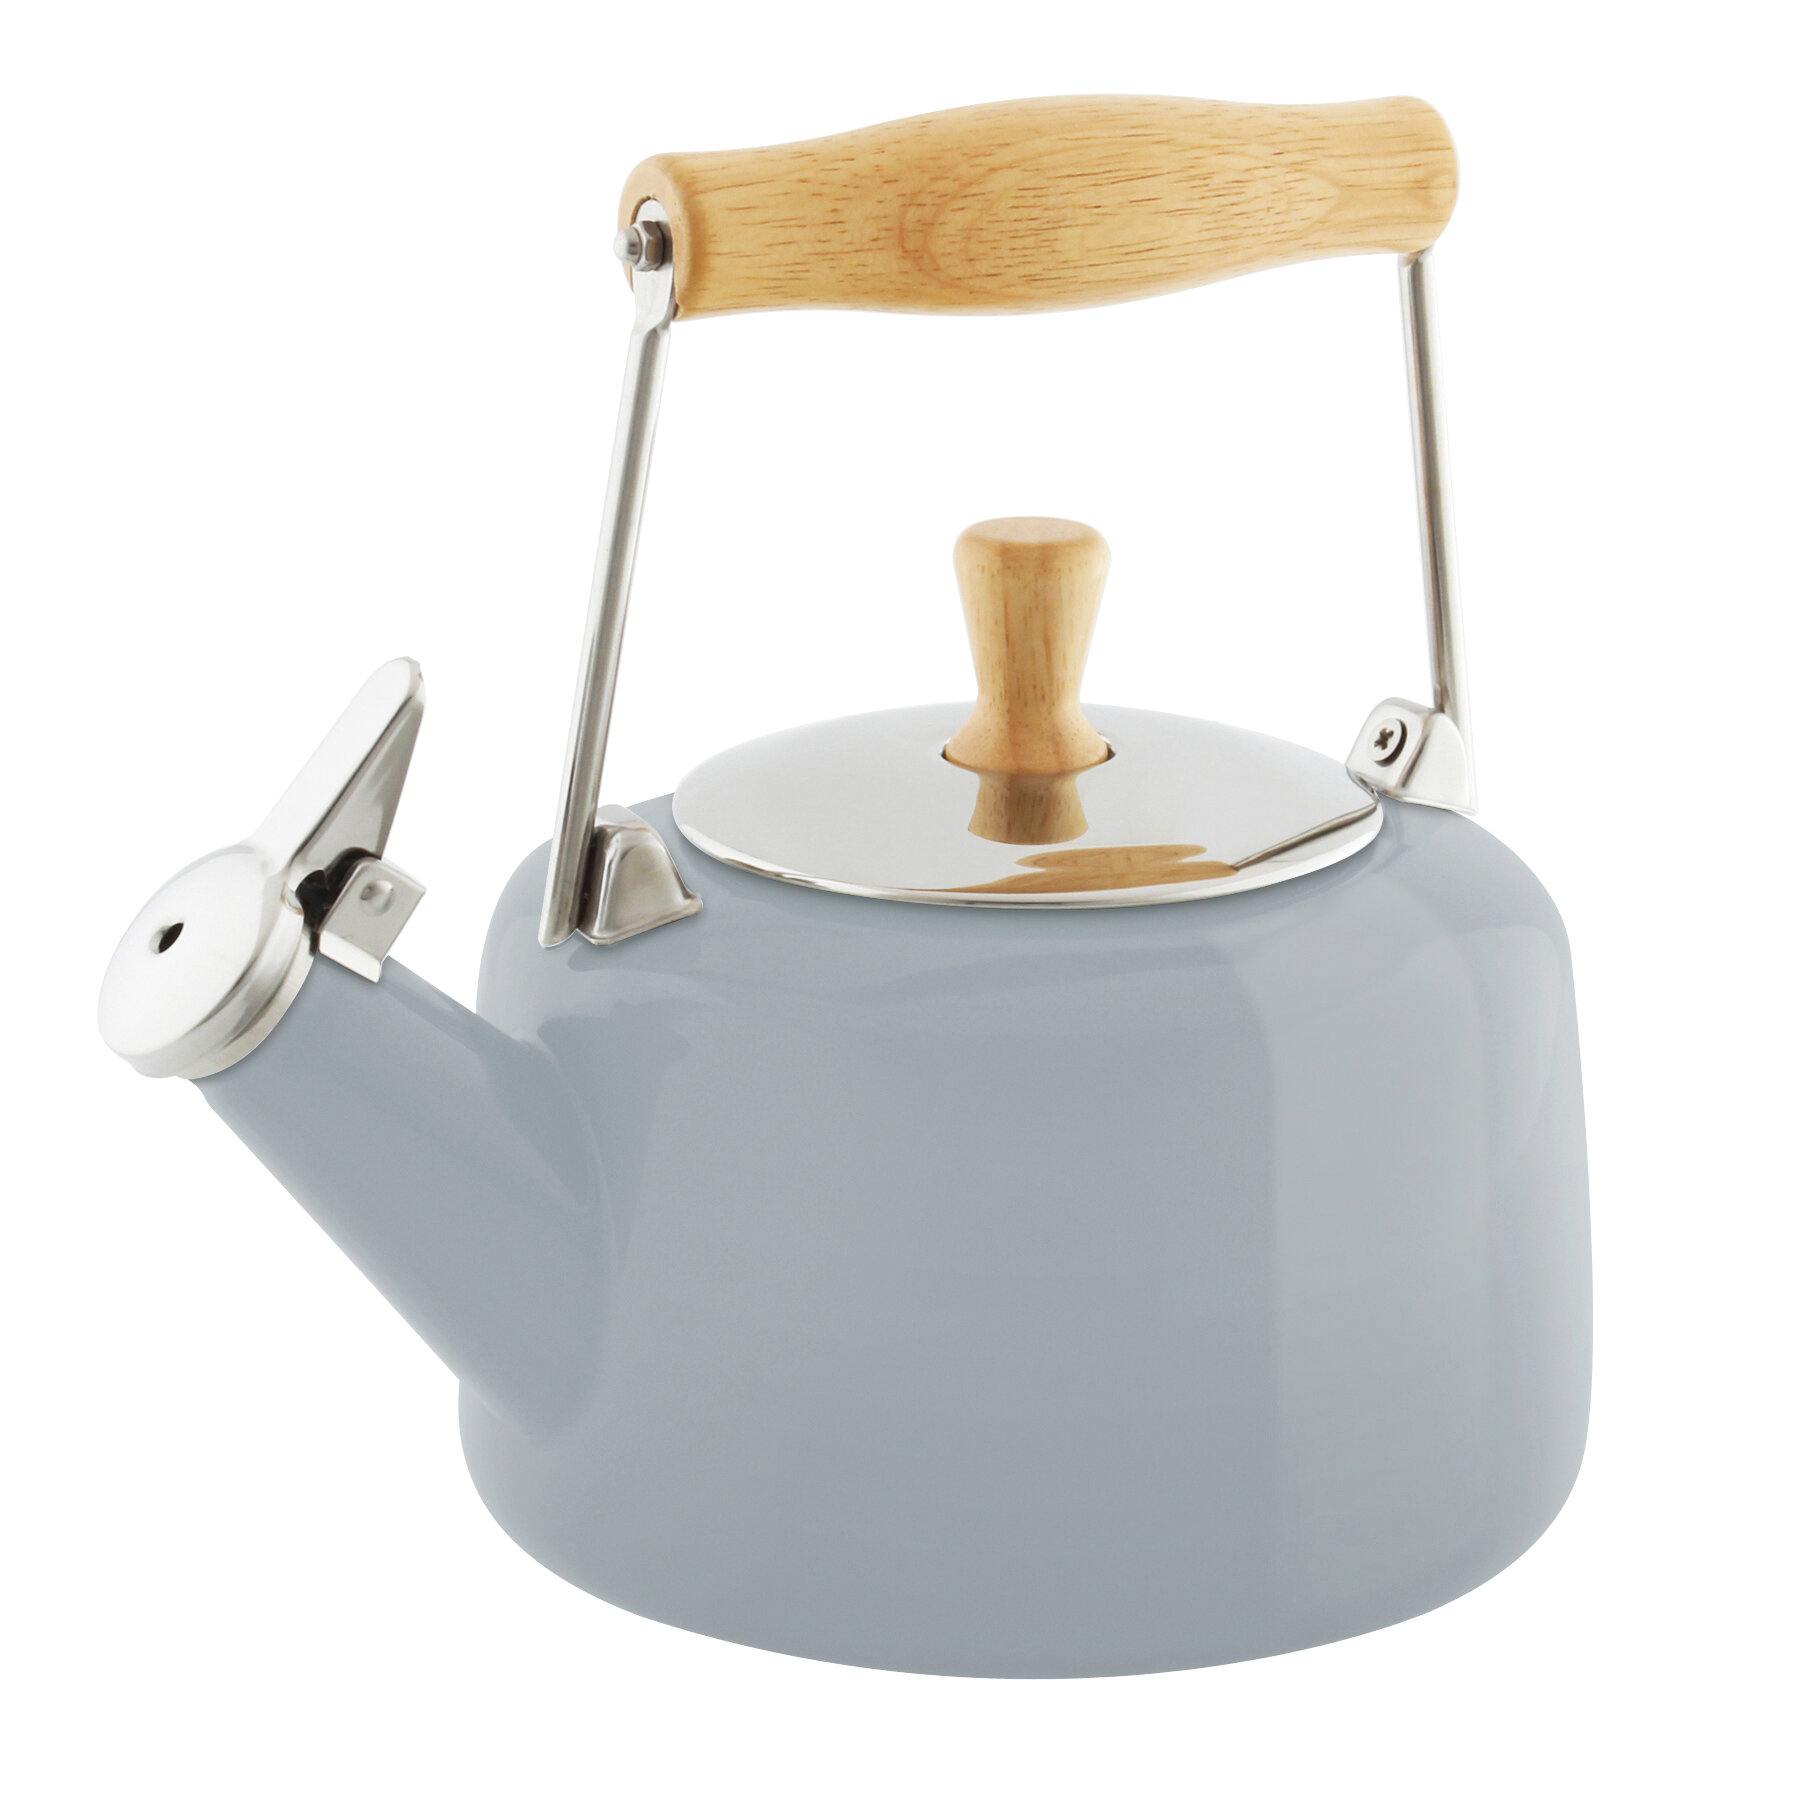 https://assets.wfcdn.com/im/69826486/compr-r85/1173/117307108/chantal-sven-14-quarts-enamel-on-steel-whistling-stovetop-tea-kettle.jpg